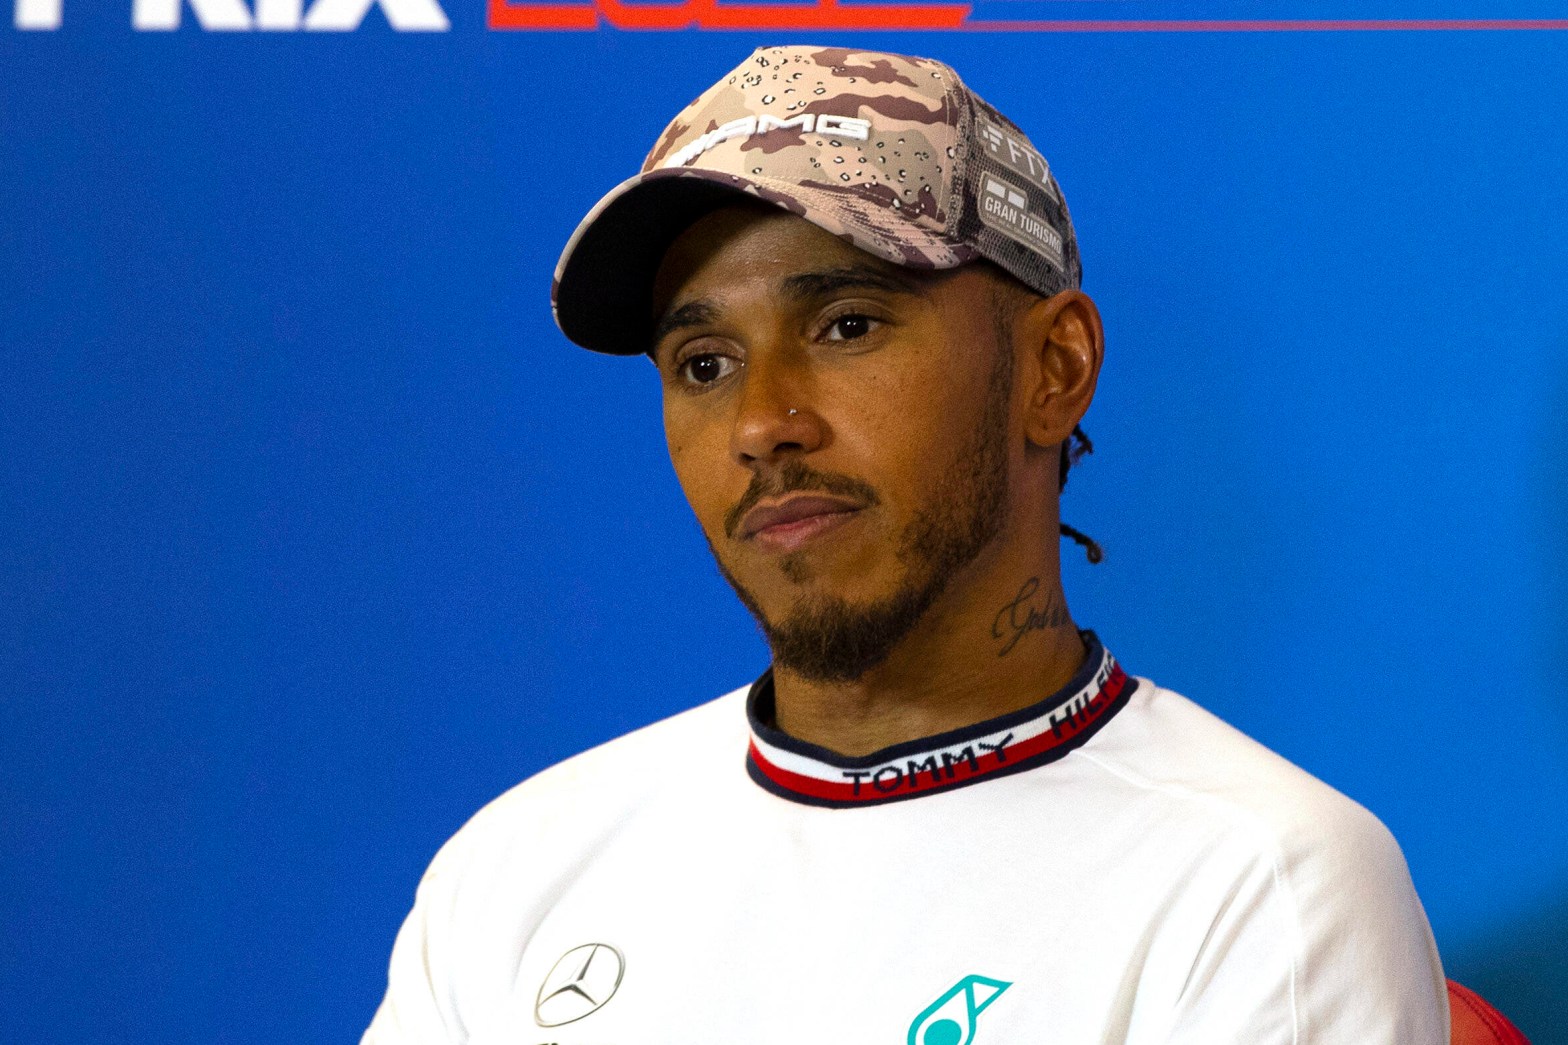 Formel 1: Fans nach Beichte von Lewis Hamilton entsetzt – „Ich fahre nicht gerne“